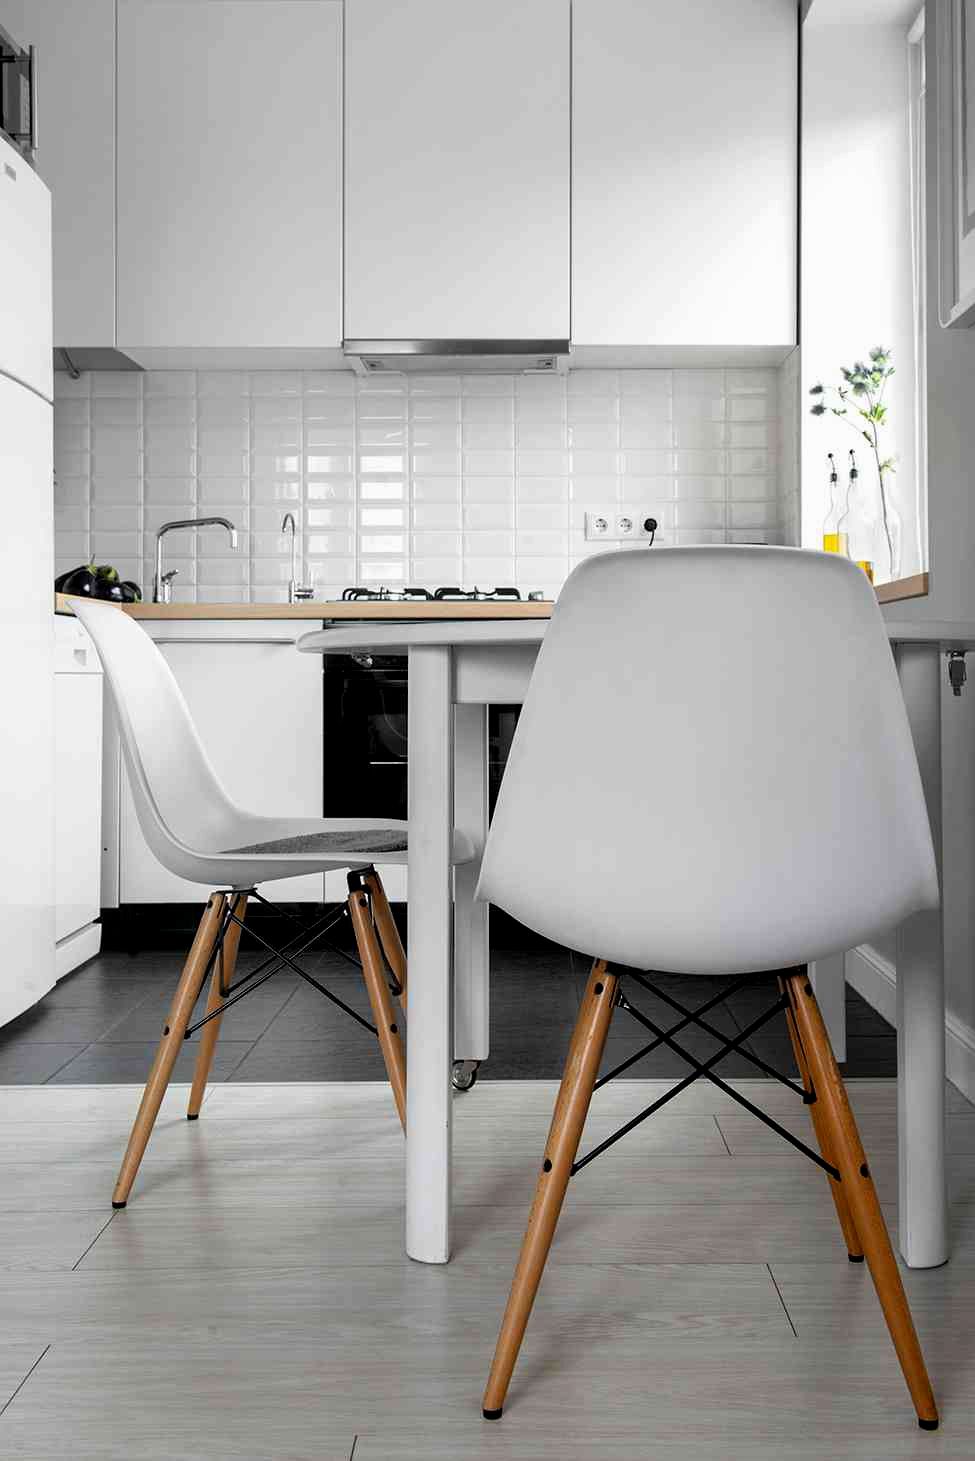 Kitchen Chairs Ikea Photo 11 